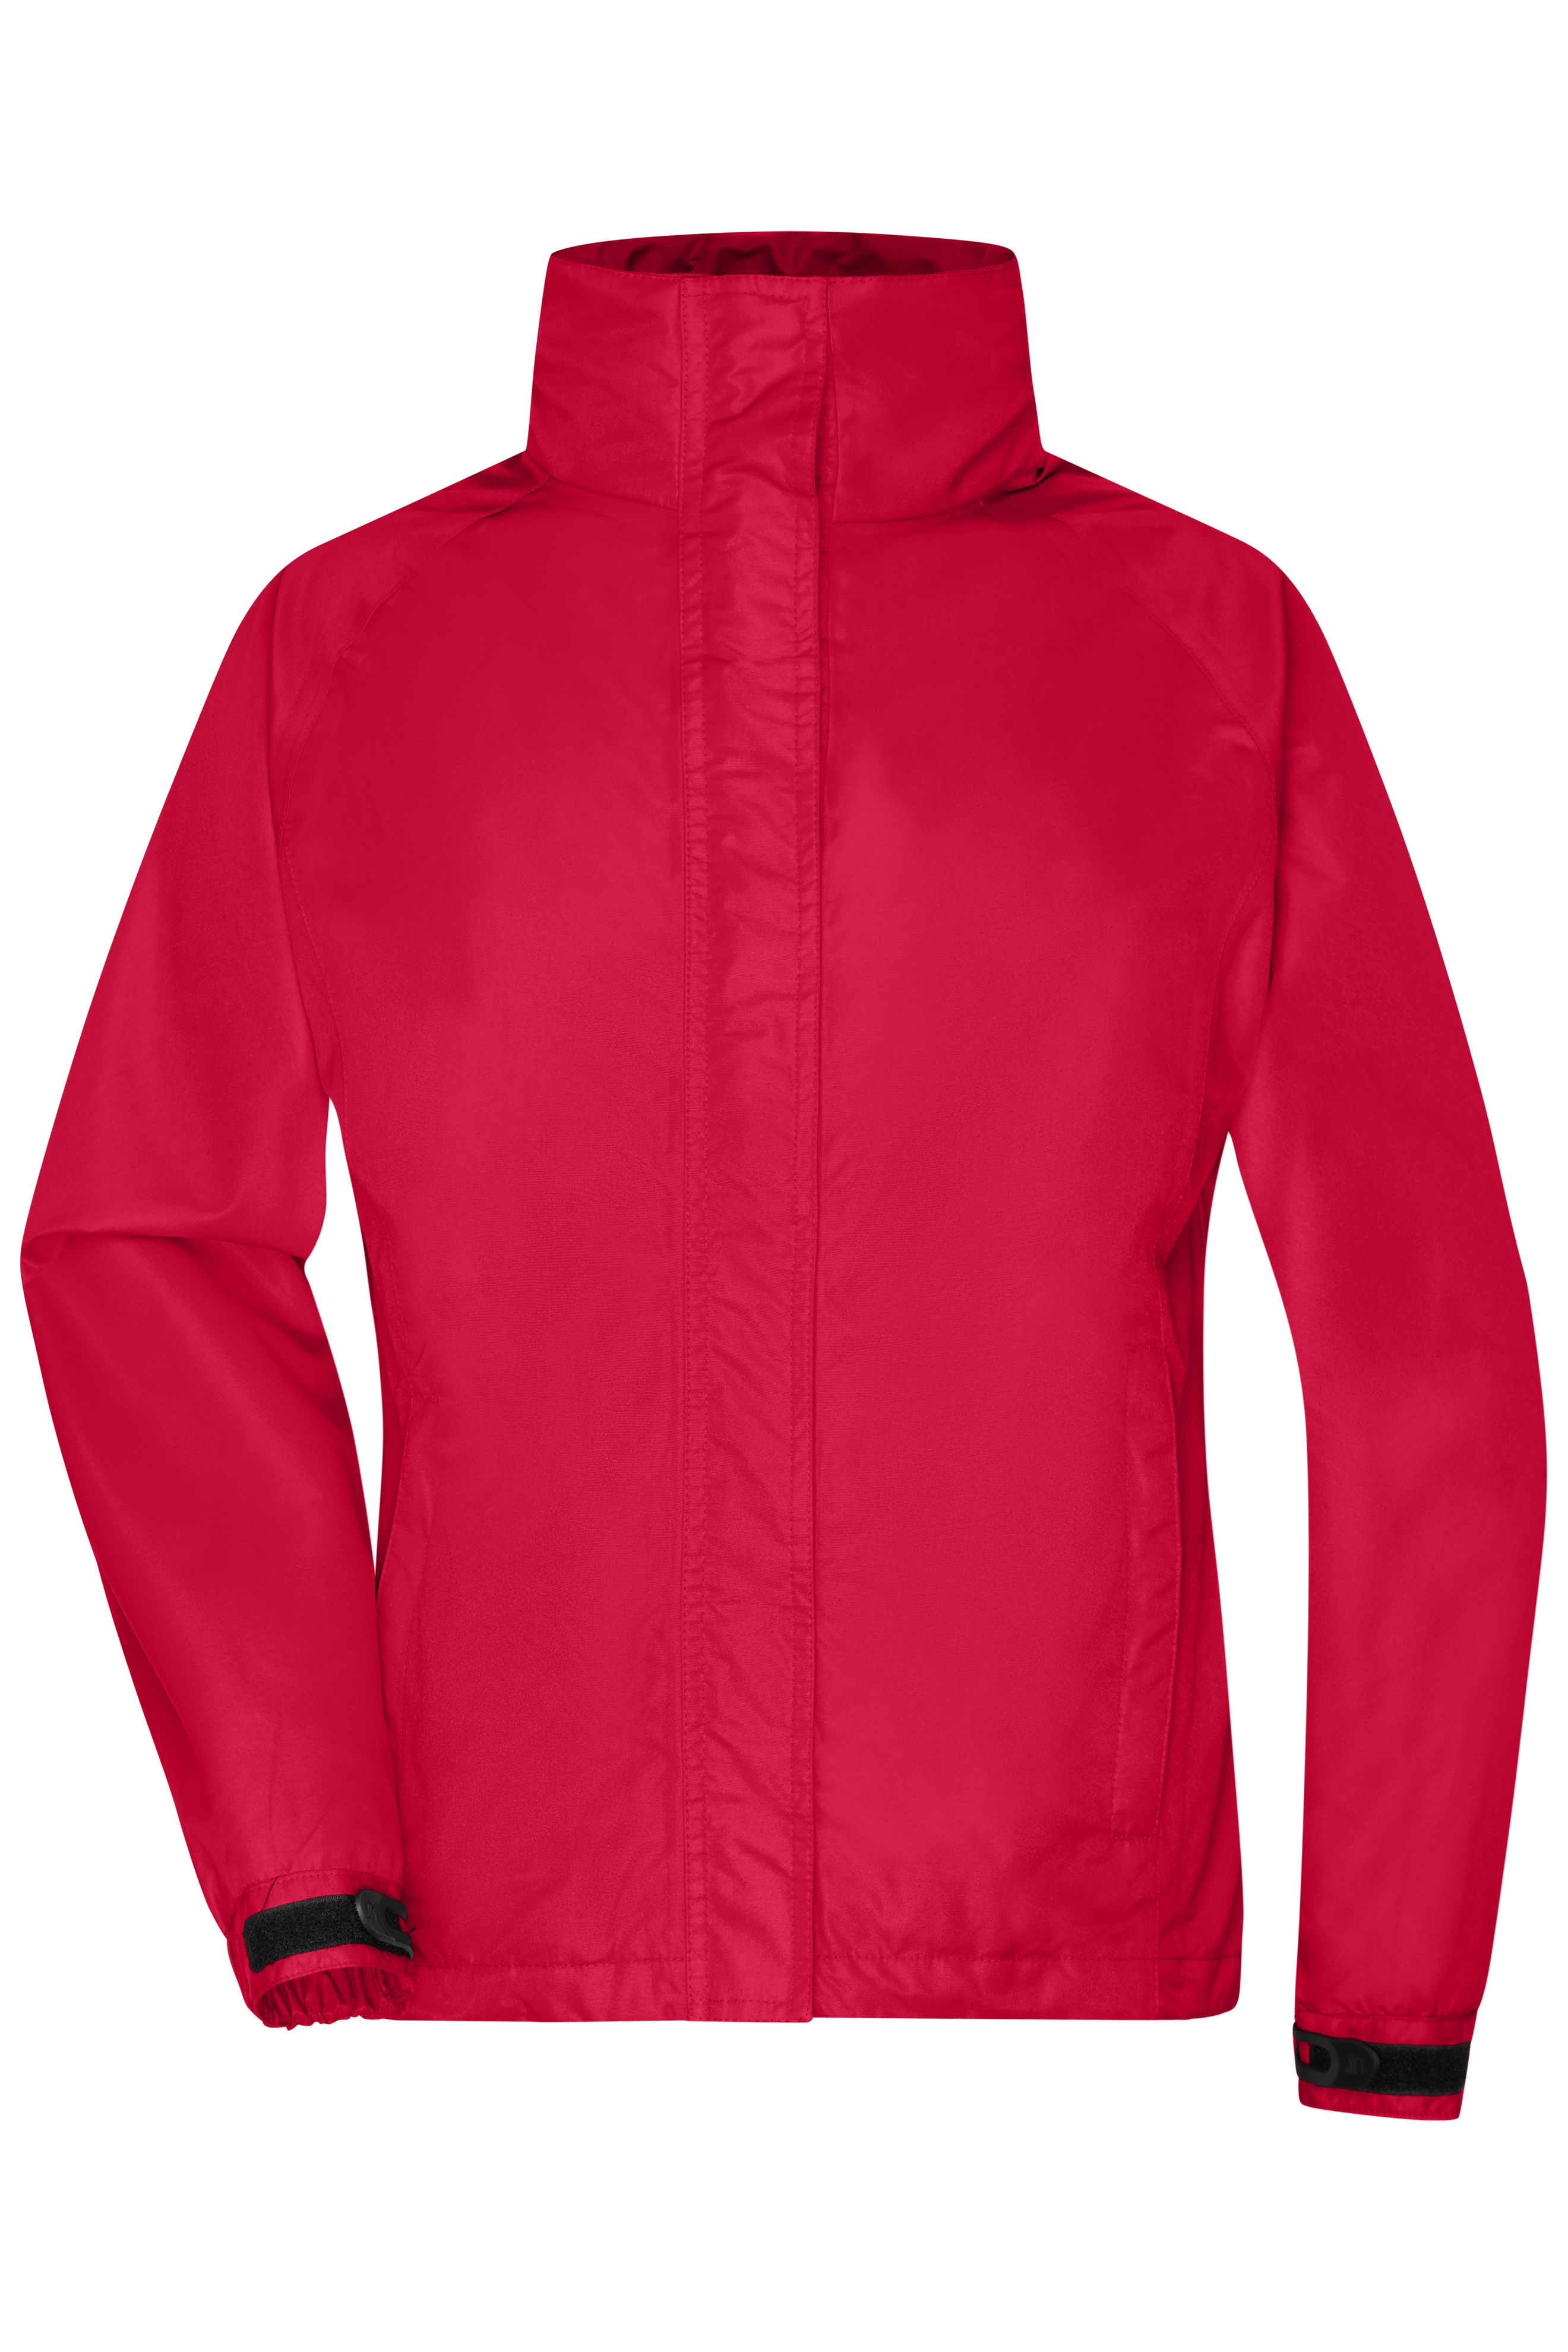 Ladies' Outer Jacket JN1011 Funktionale Outdoorjacke für extreme Wetterbedingungen